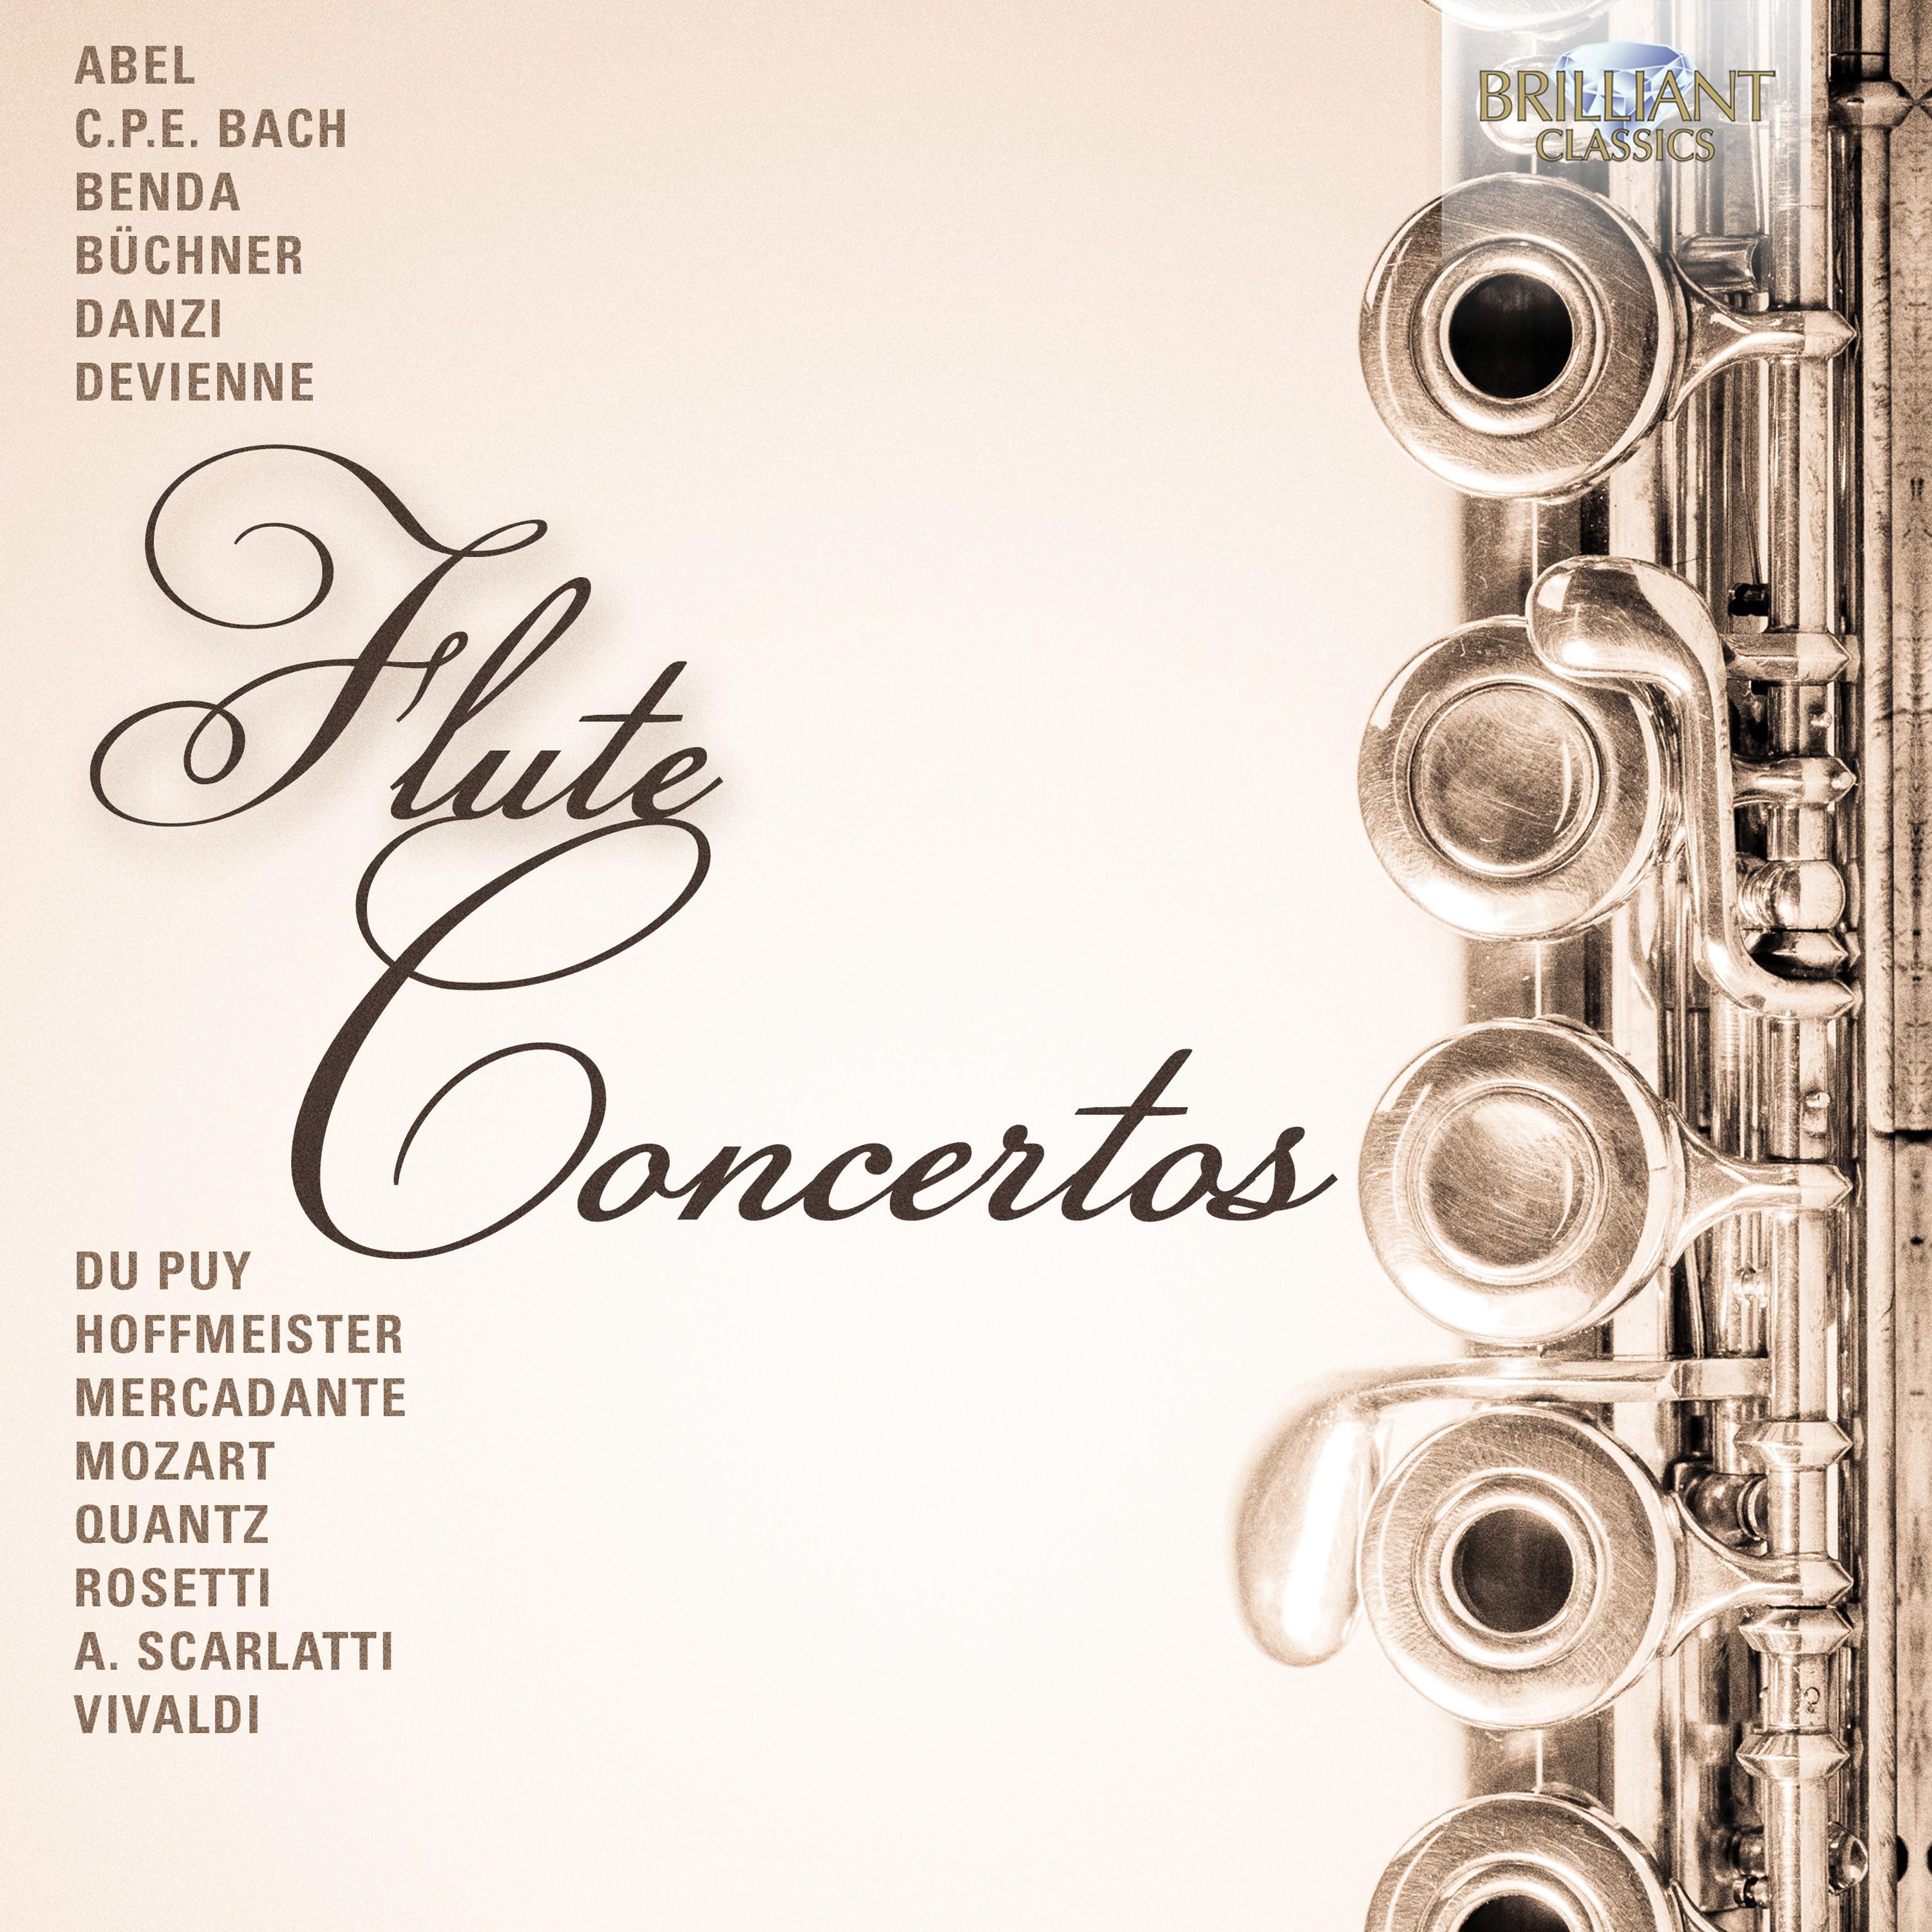 Concerto in B-Flat Major, Wq. 164: I. Allegretto